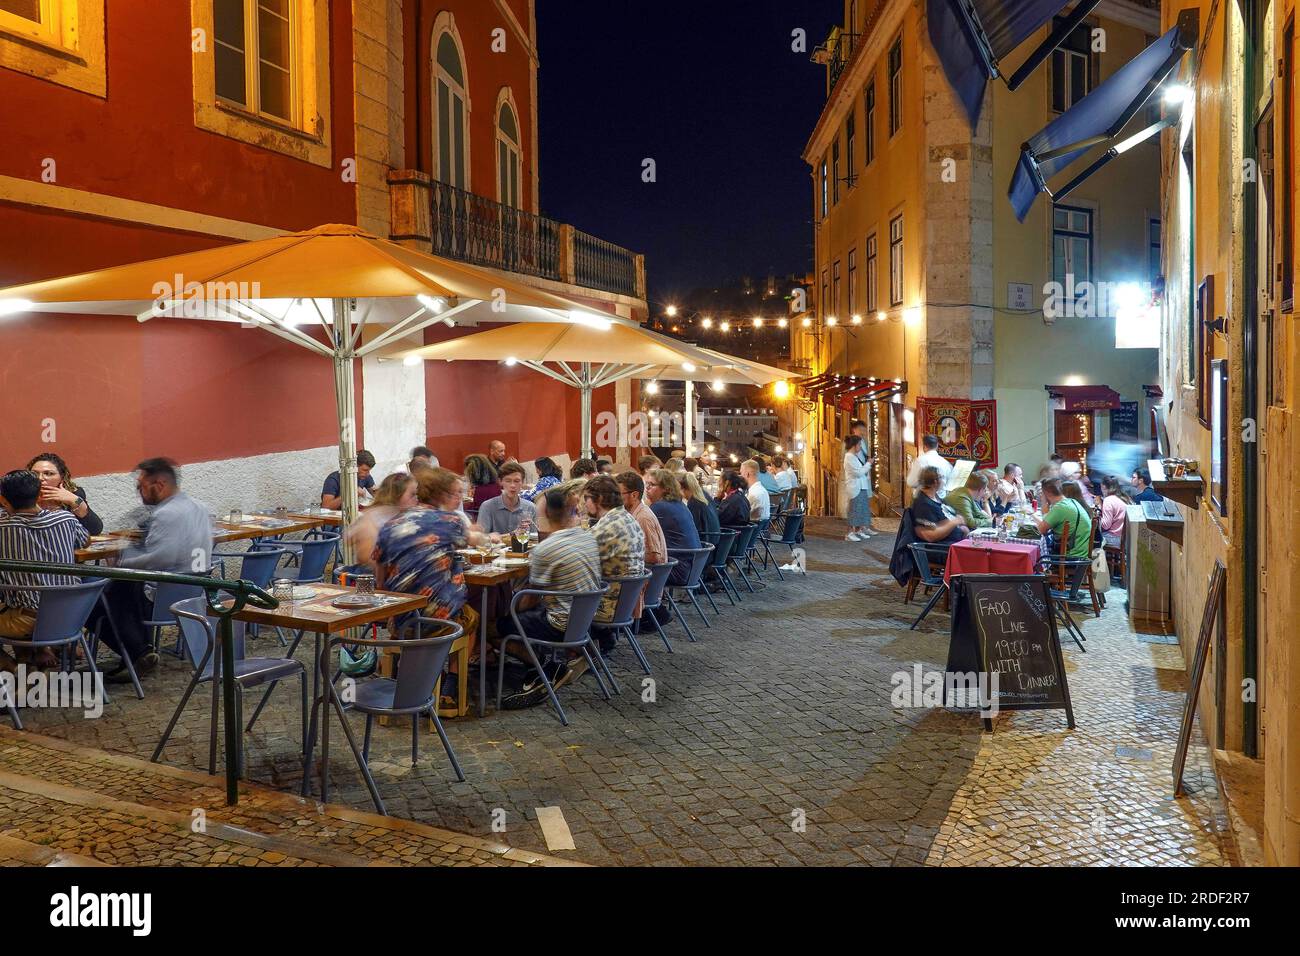 Portugal, Lissabon, Portugal, Lissabon Bairro Alto Viertel, Nachtszene, junge Leute bei Nachtparty am Wochenende, Bars, Restaurants und Fado Clubs Foto Stockfoto